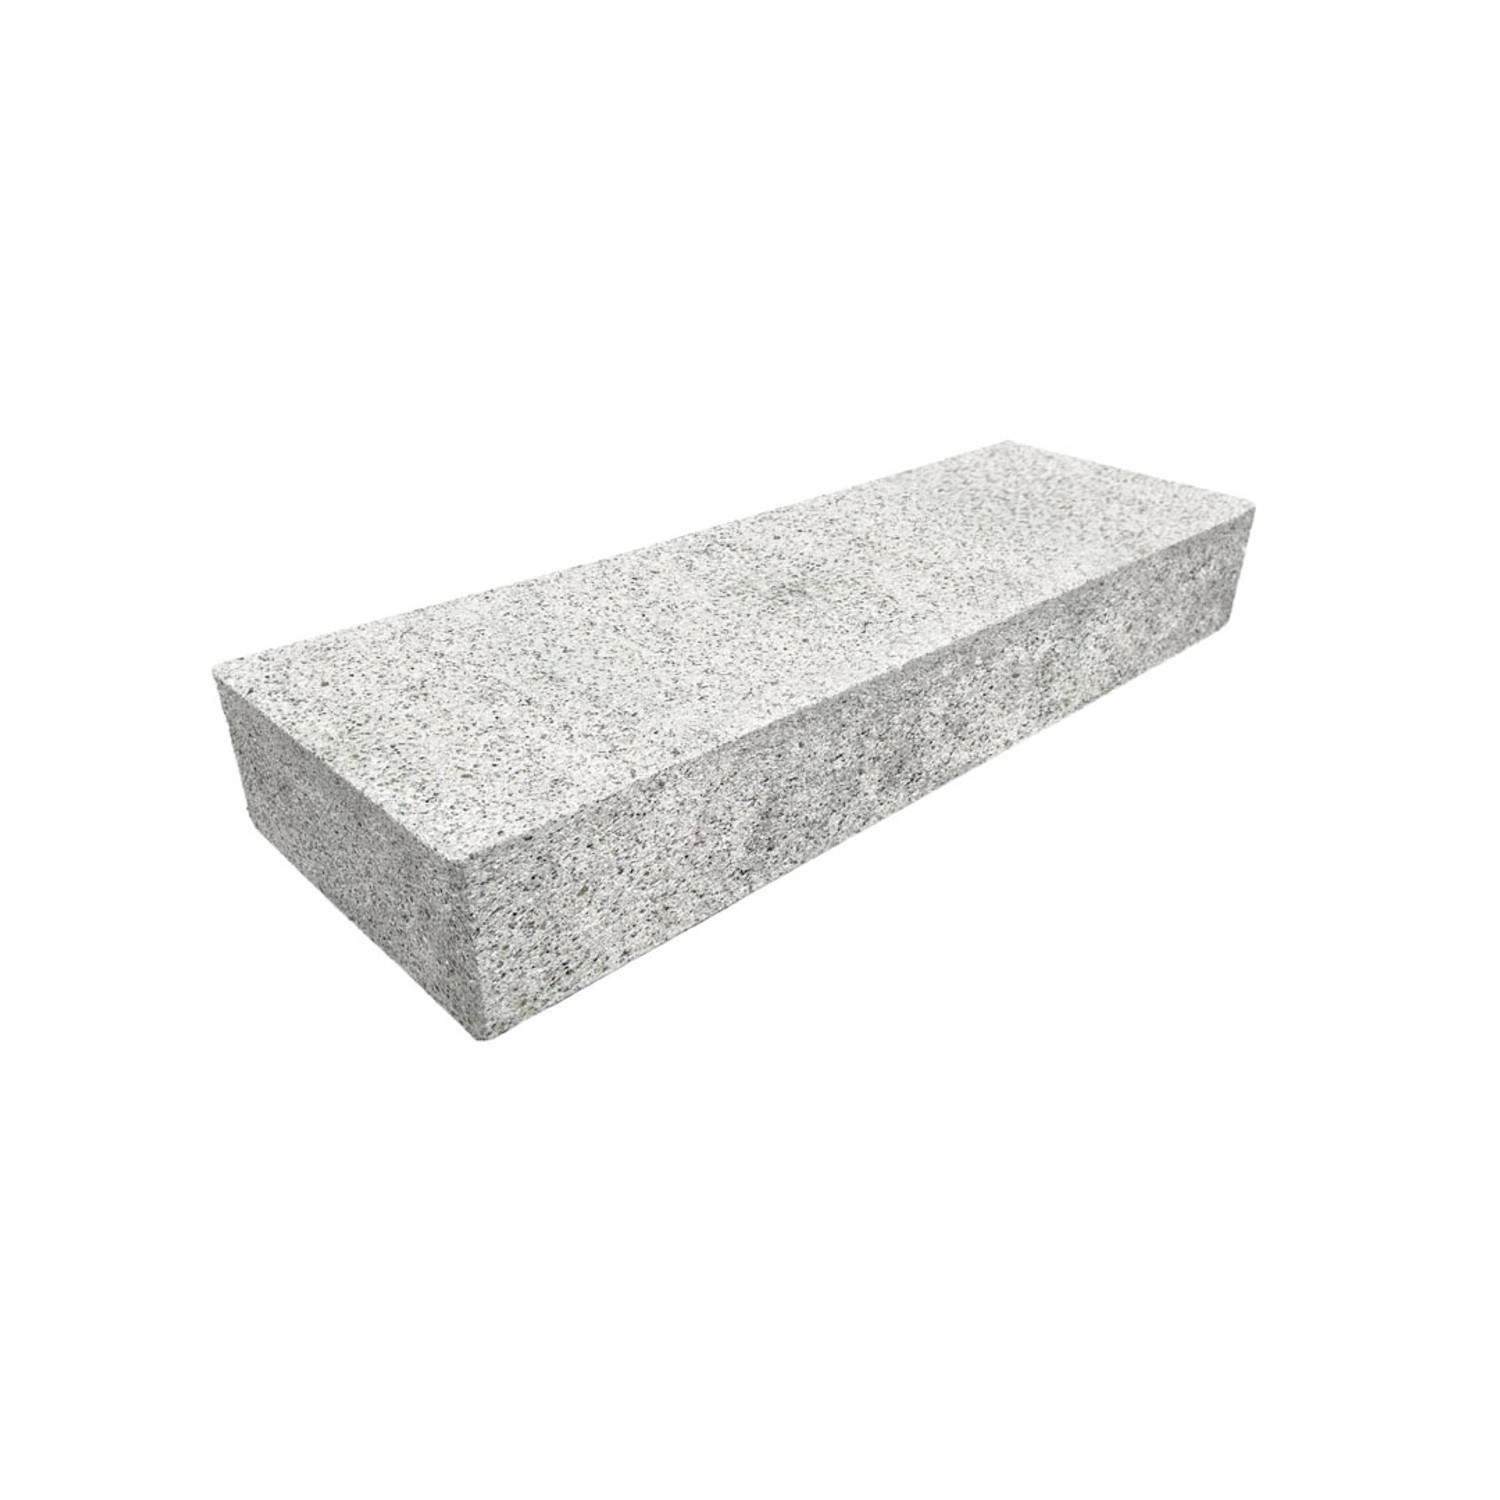 Diephaus Blockstufe Limos Granit 100 cm x 35 cm x 15 cm